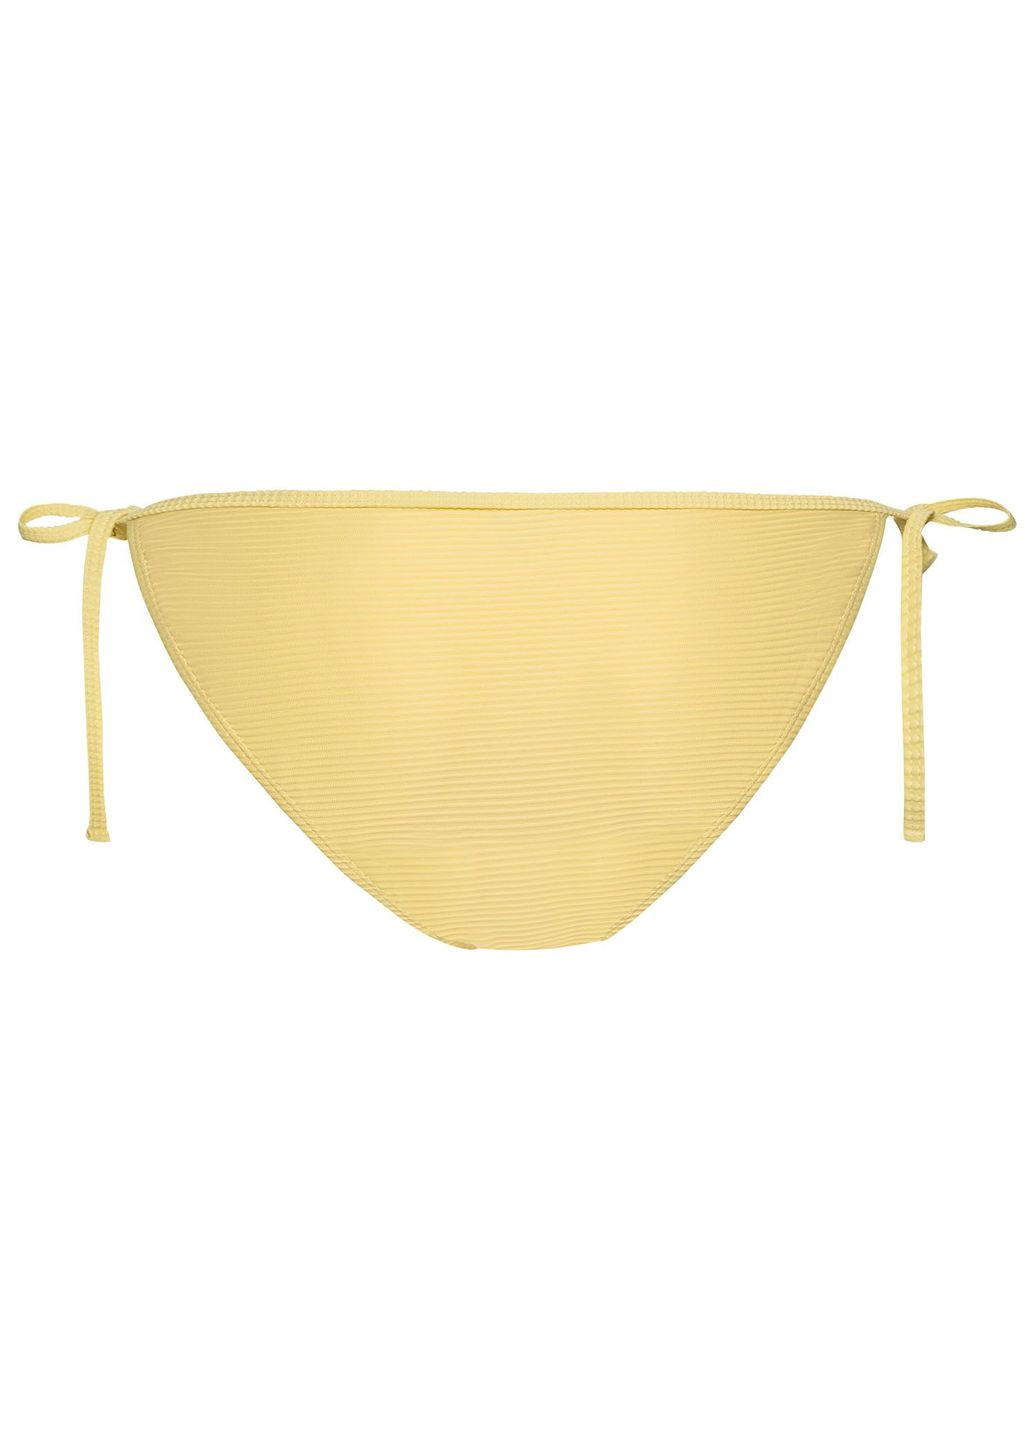 Желтый купальник раздельный на подкладке для женщины lycra® 348526 38(s) бикини Esmara